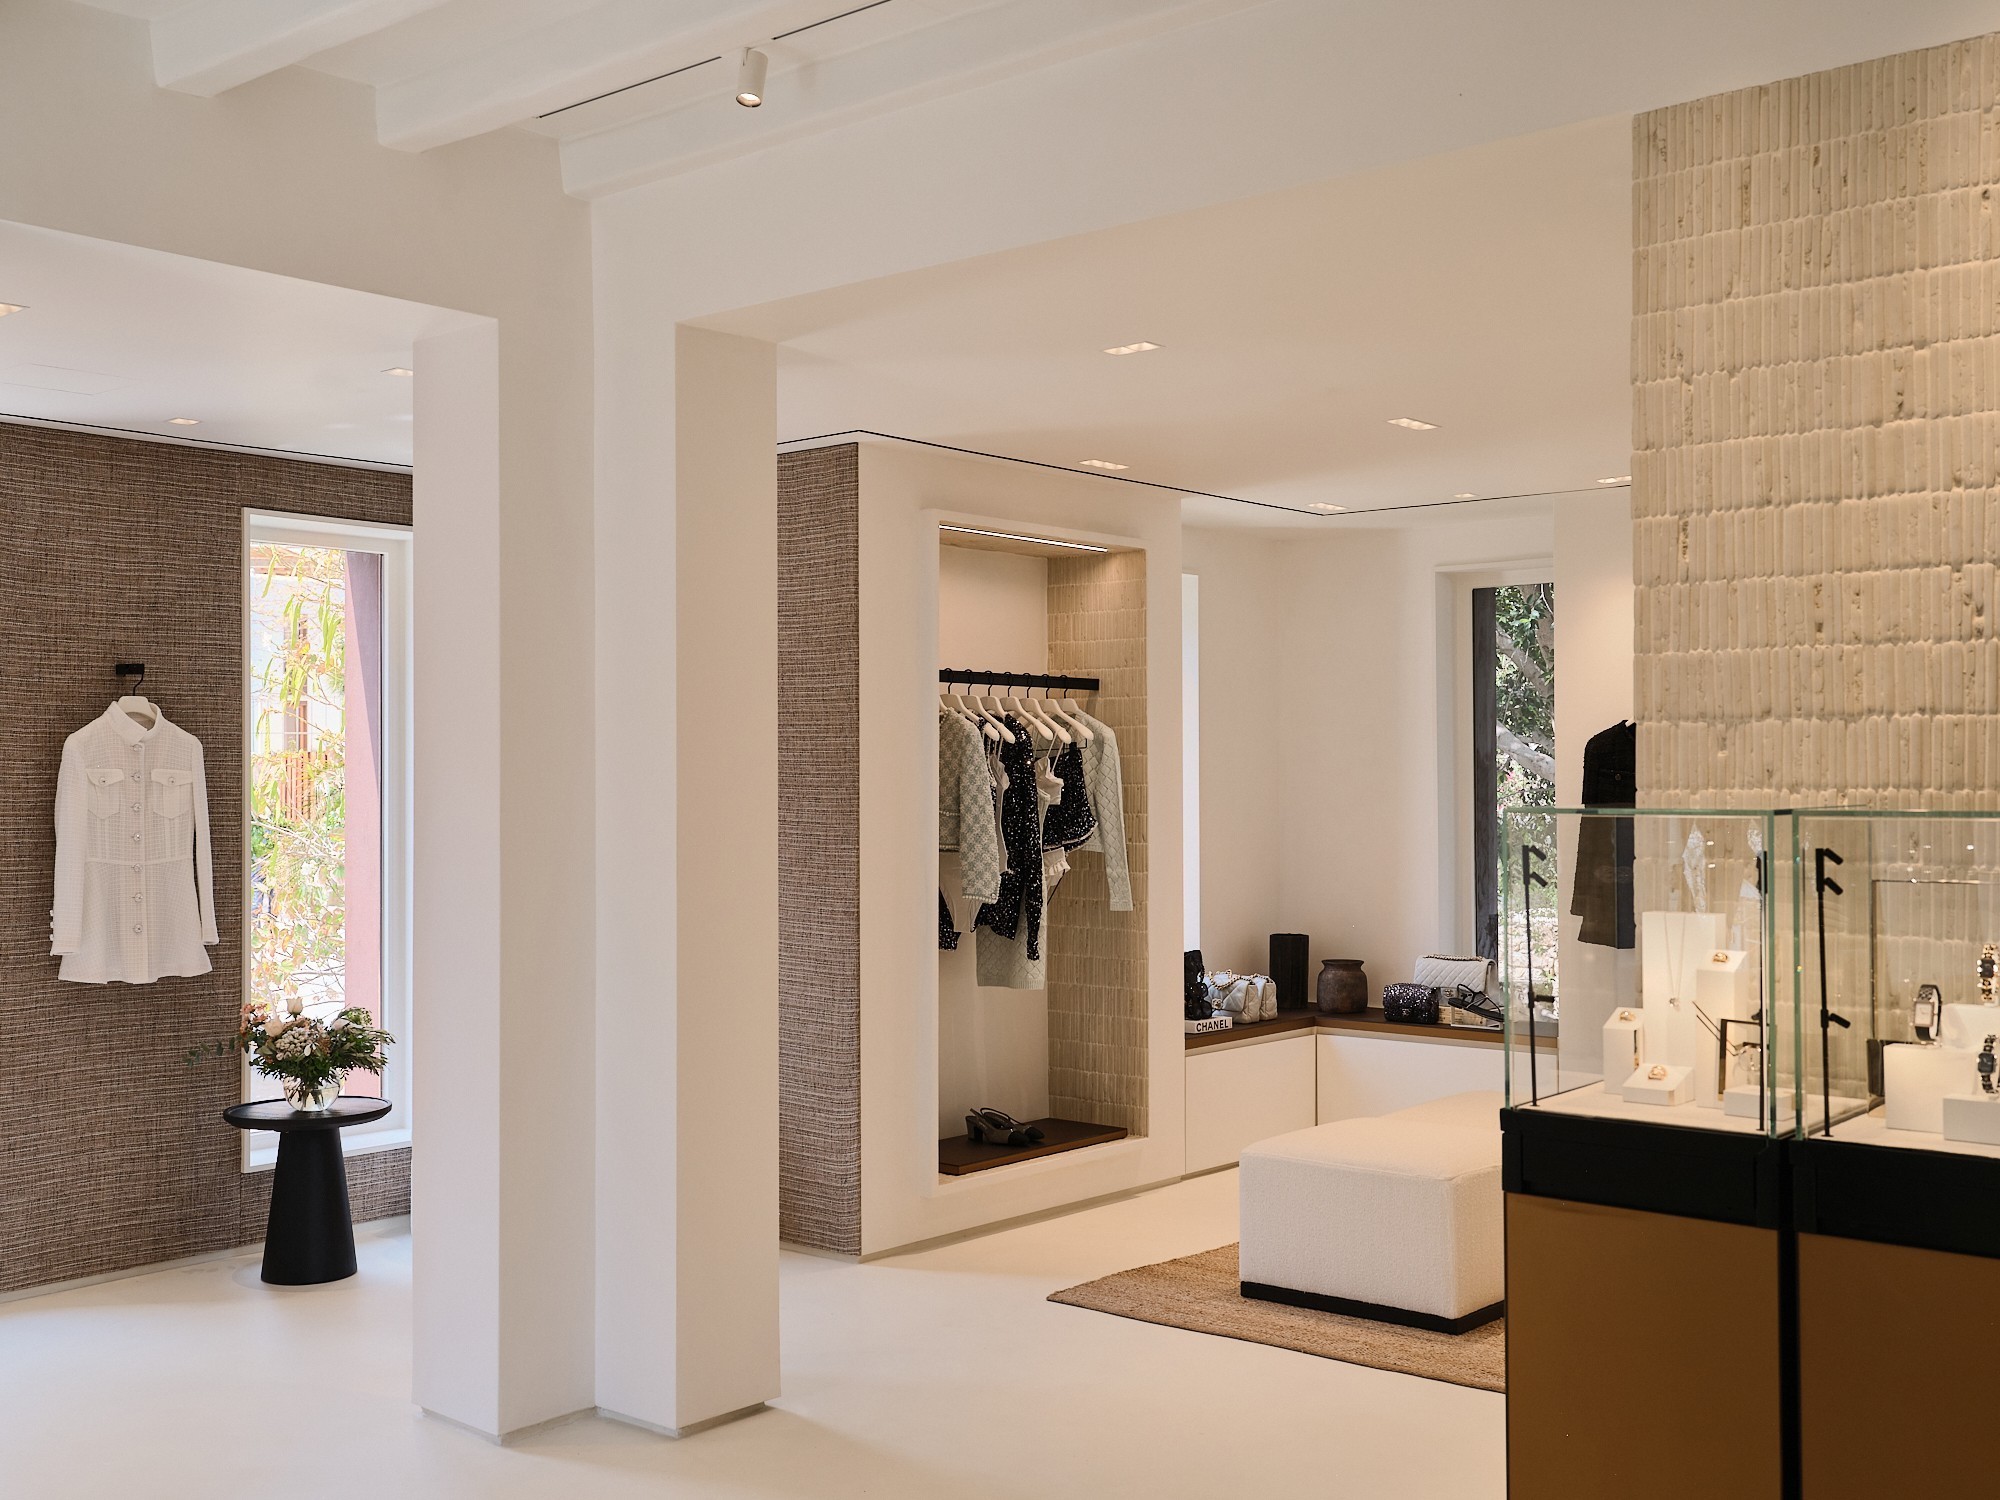 Άνοιξε η πρώτη μπουτίκ της Chanel στην Αθήνα – Δύο ακόμα στο Nammos Village στη Μύκονο